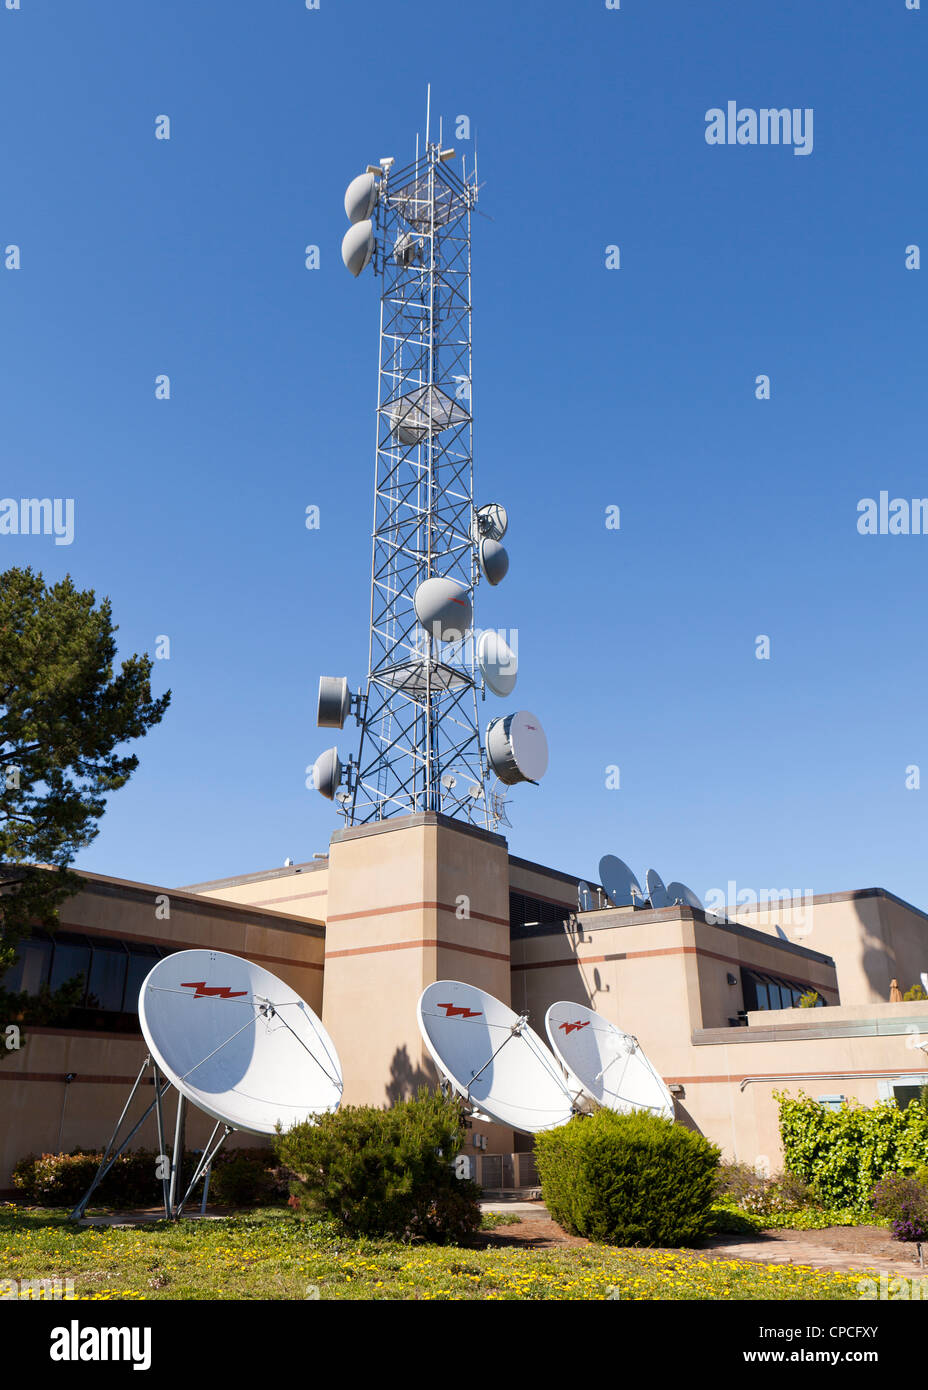 La estación de TV antenas parabólicas Foto de stock